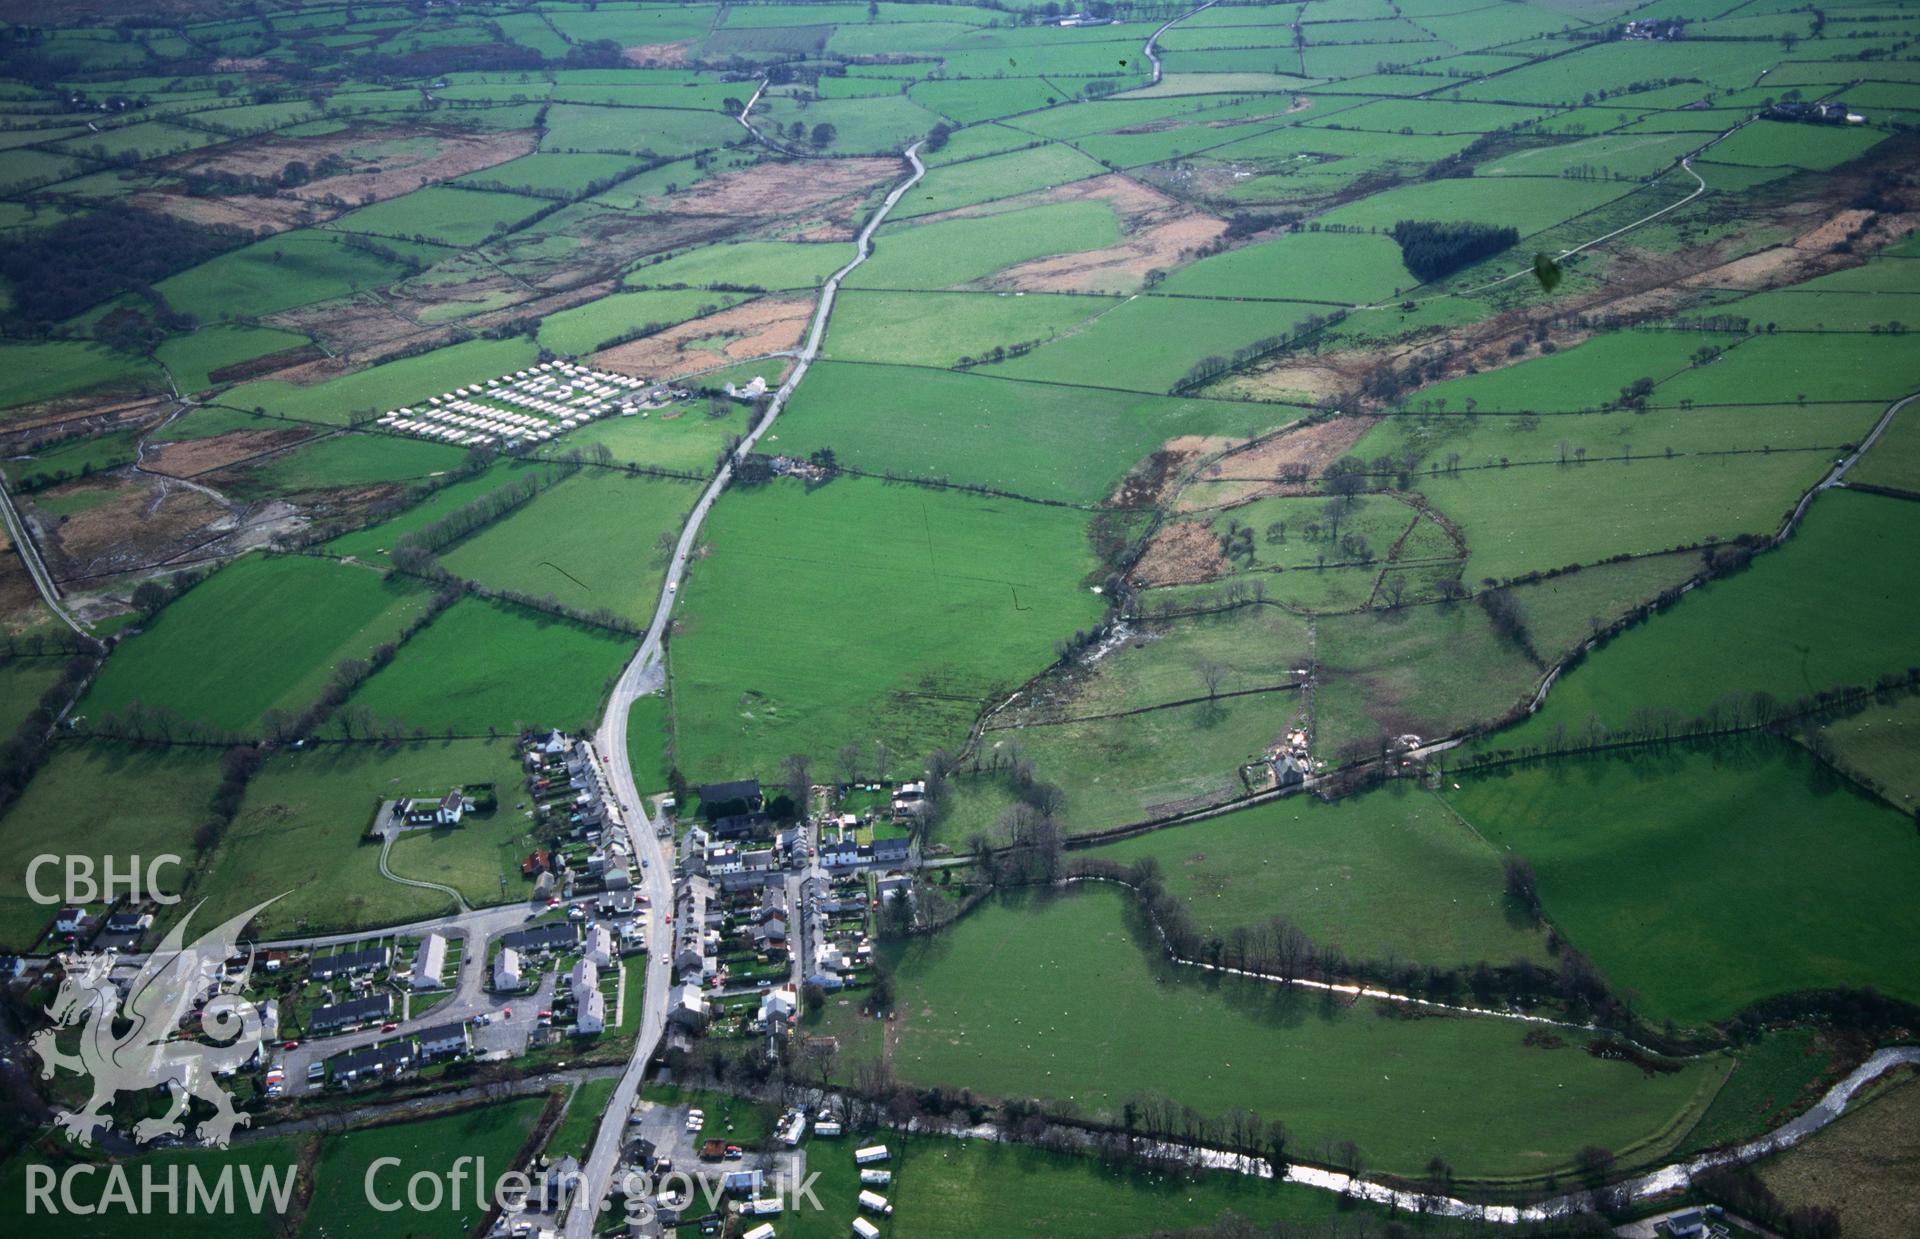 Slide of RCAHMW colour oblique aerial photograph of Pontrhydfendigaid Landscape, taken by T.G. Driver, 31/3/1998.